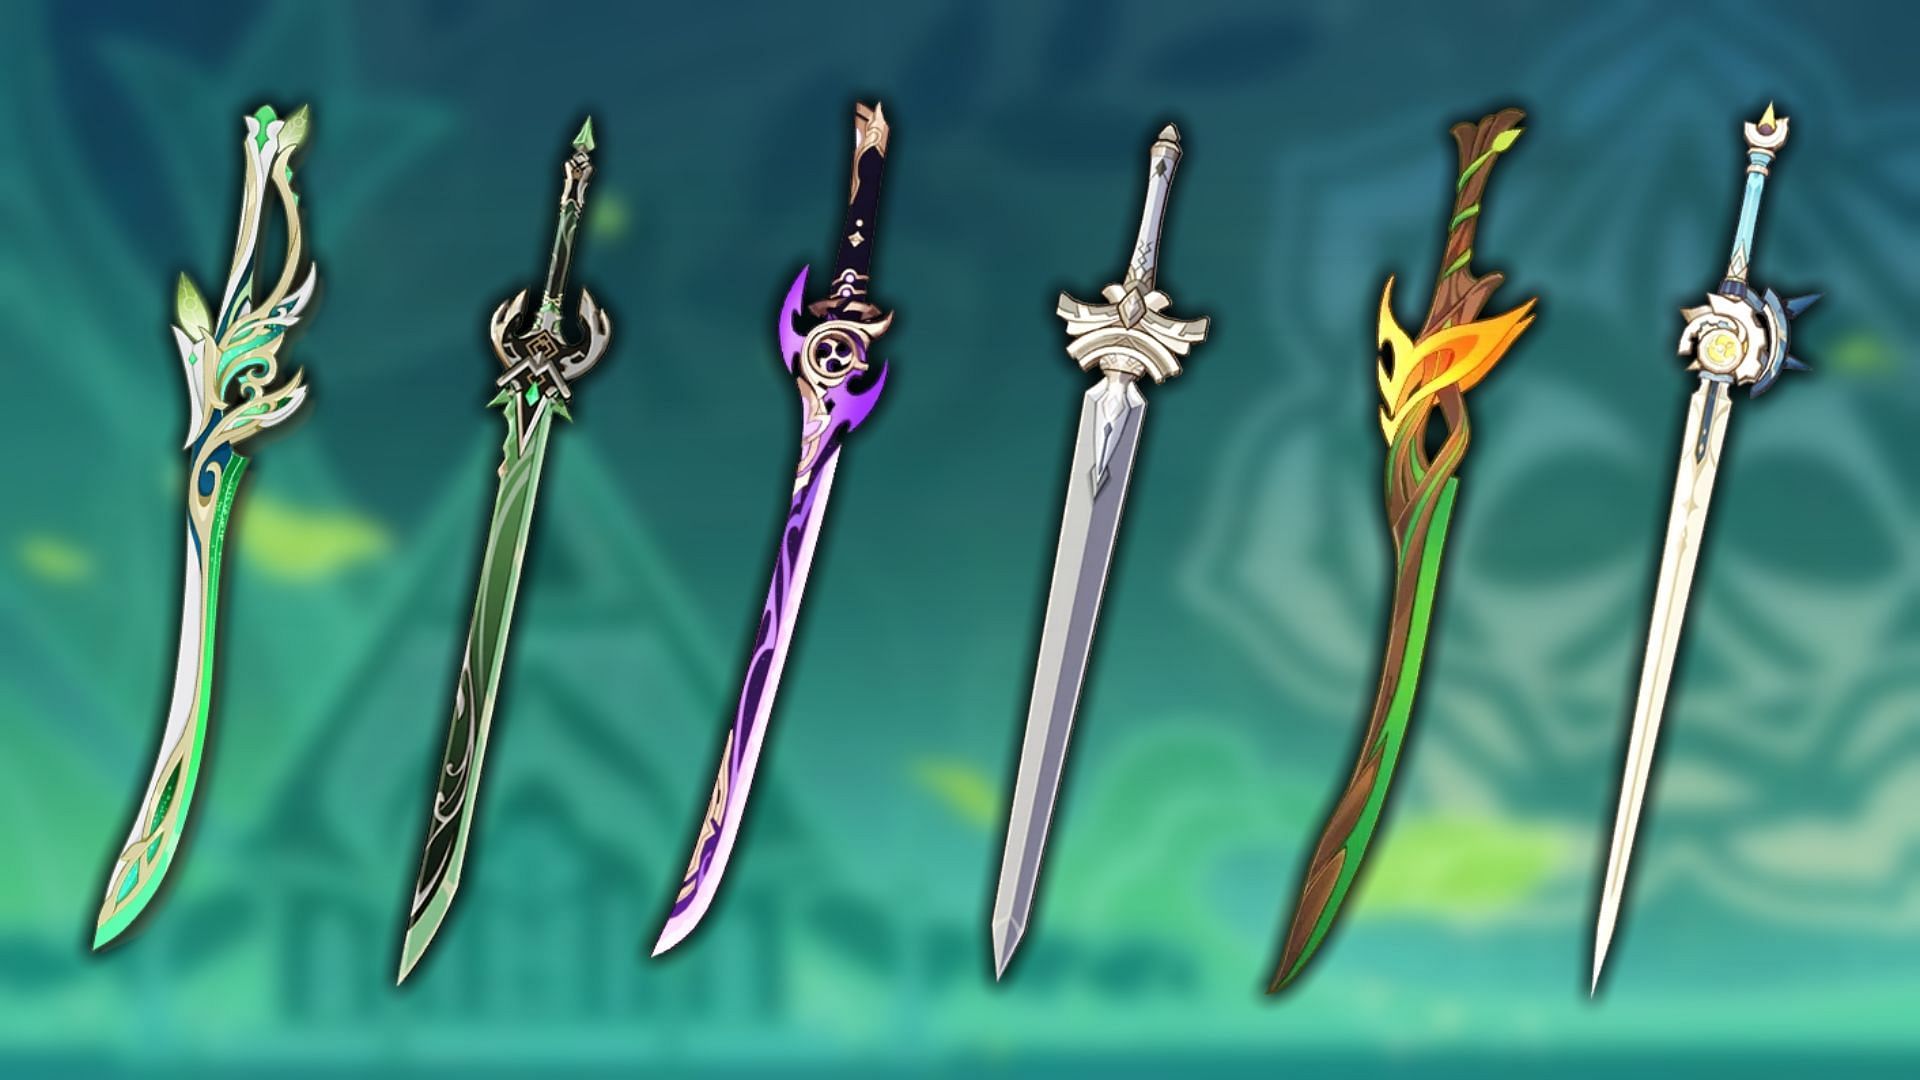 genshin impact best sword for razor